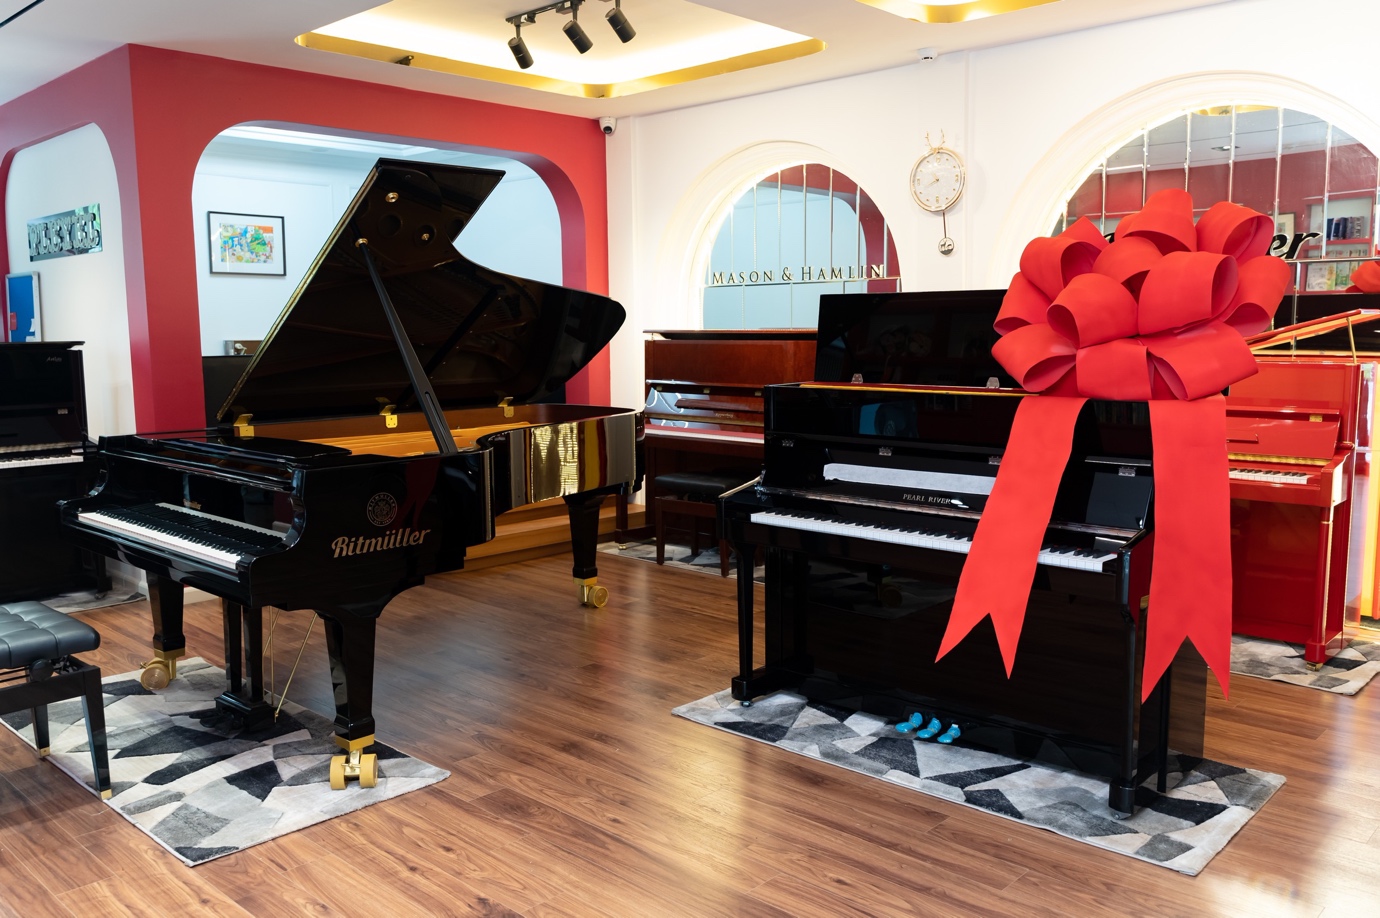 (Chiếc Upright Piano thương hiệu Pearl River trị giá 130 triệu đồng là phần thưởng dành cho Quán quân bảng Festival)